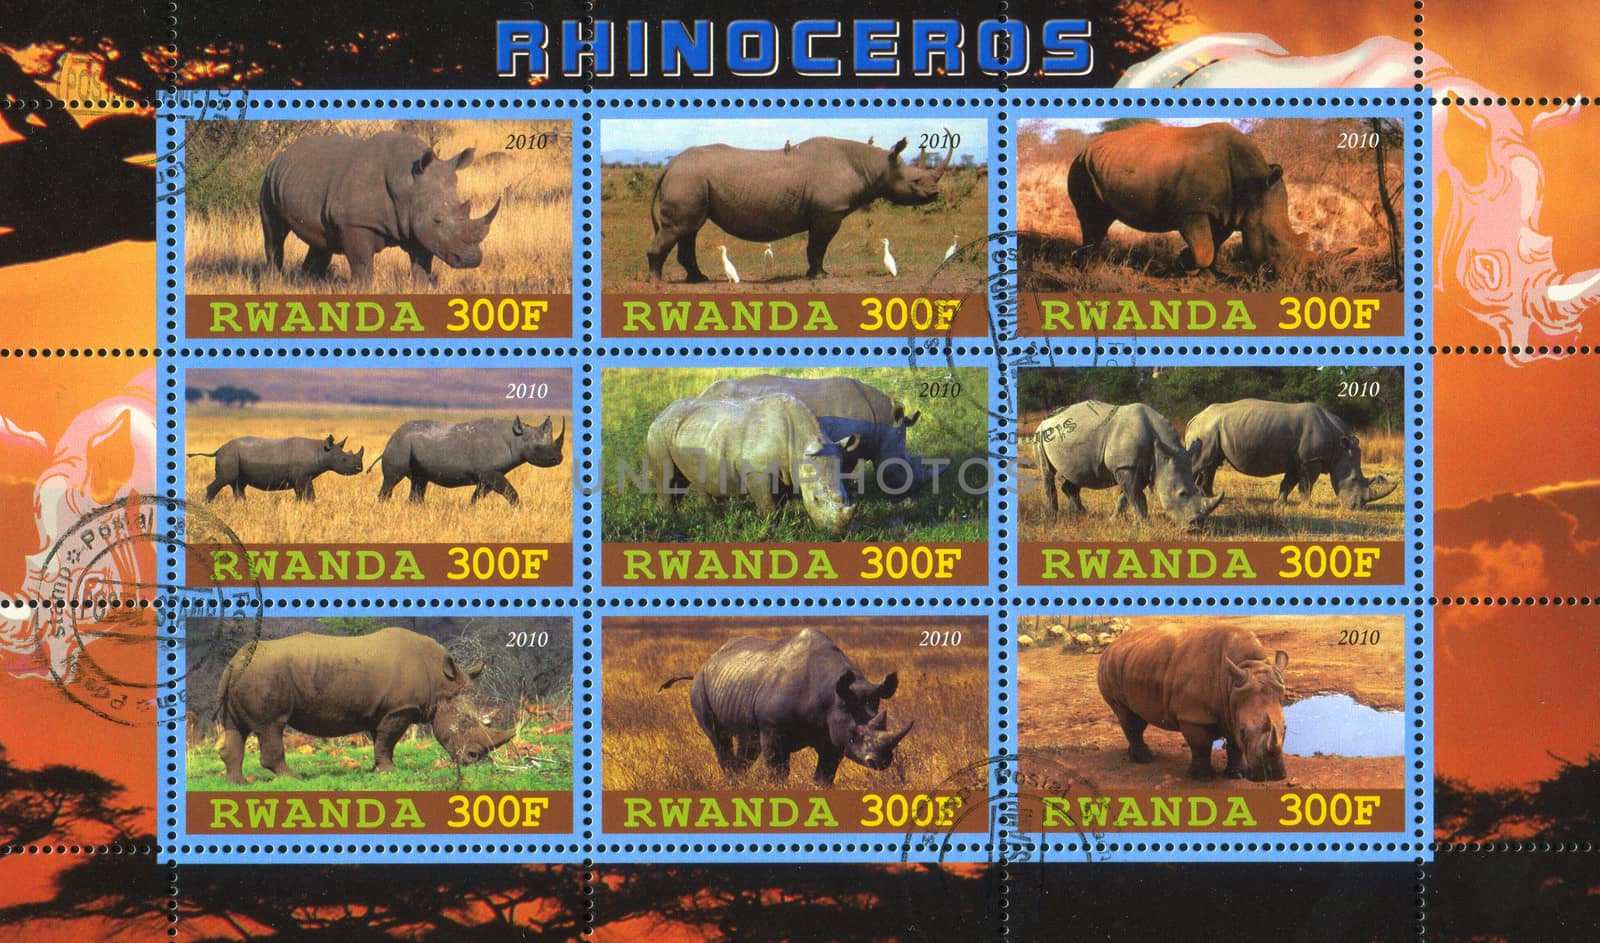 Rhinoceros by rook